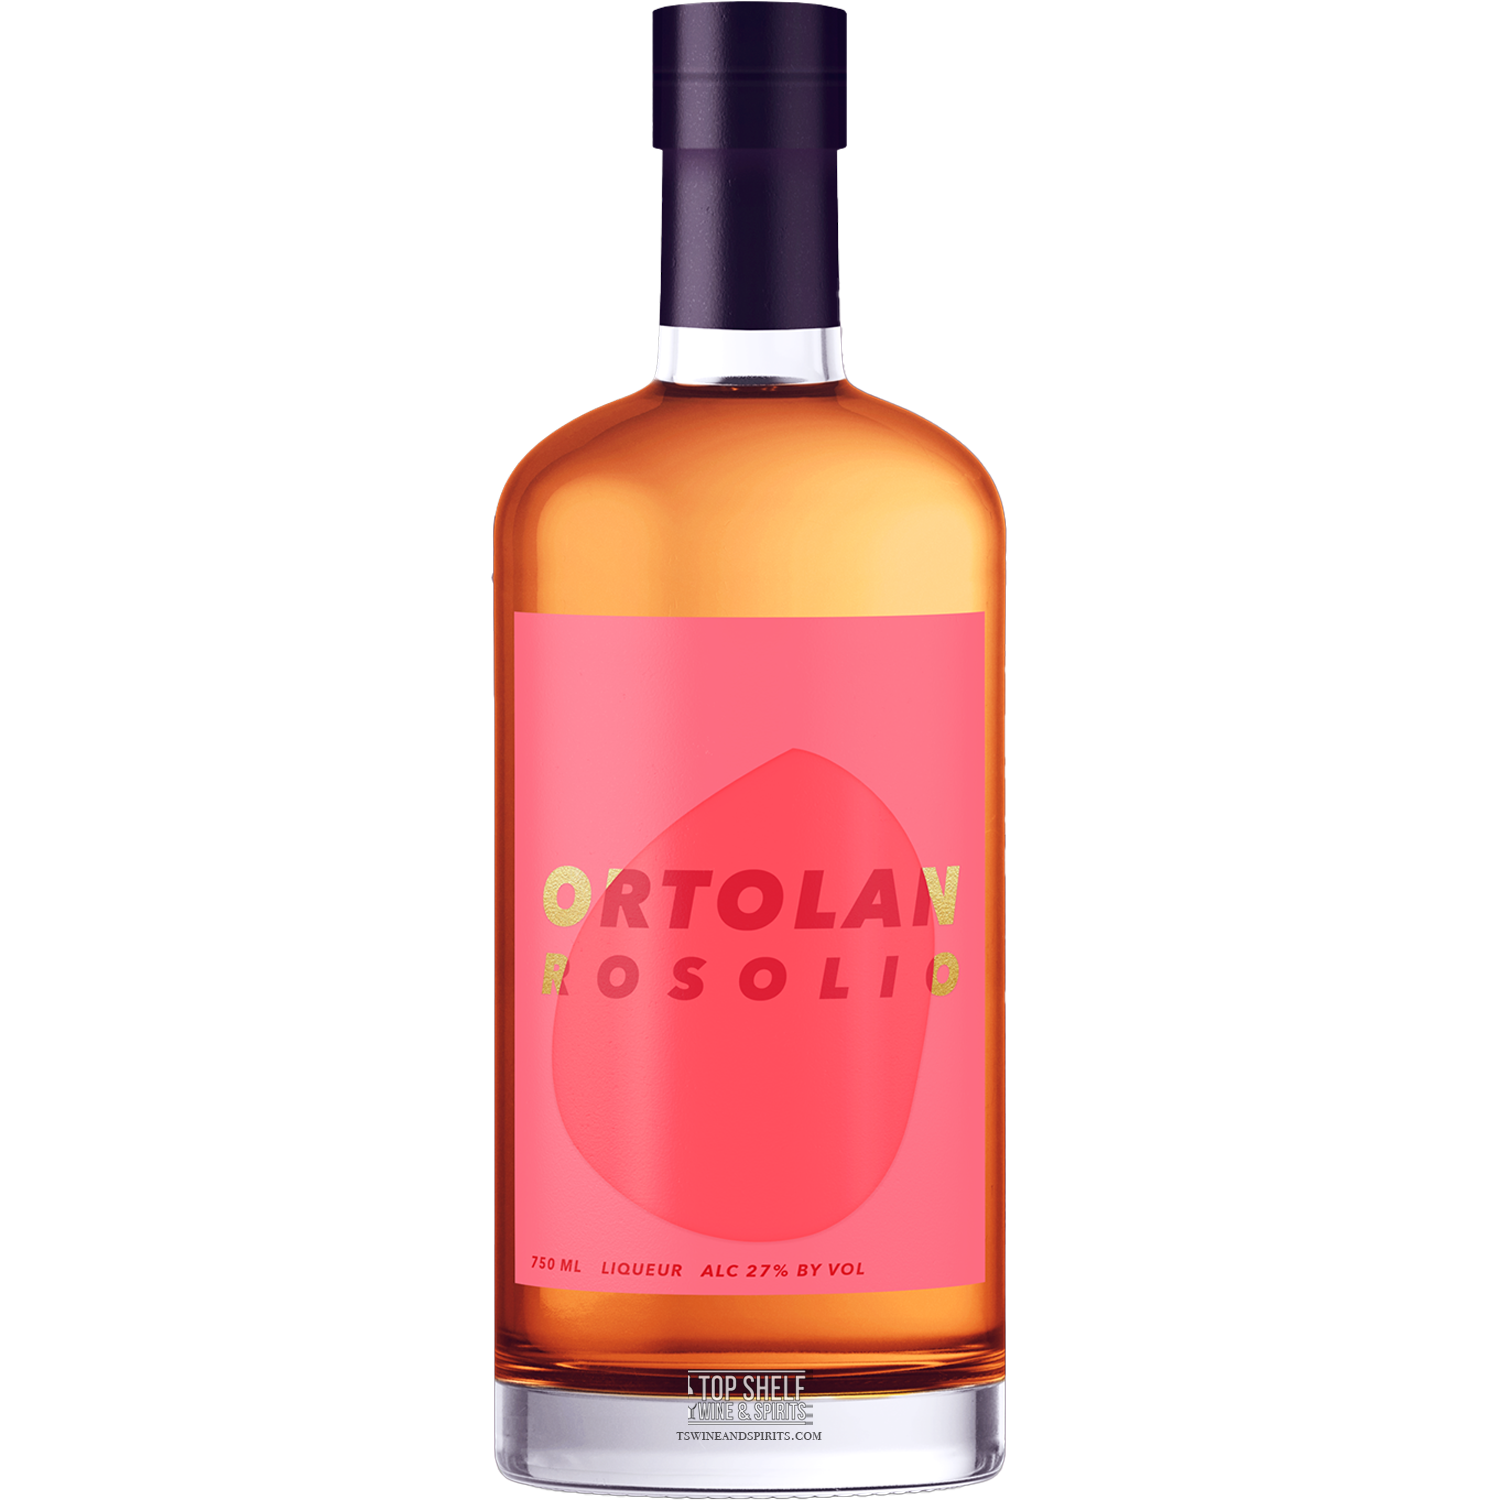 Ortolan Rosolio (Rose) Liqueur